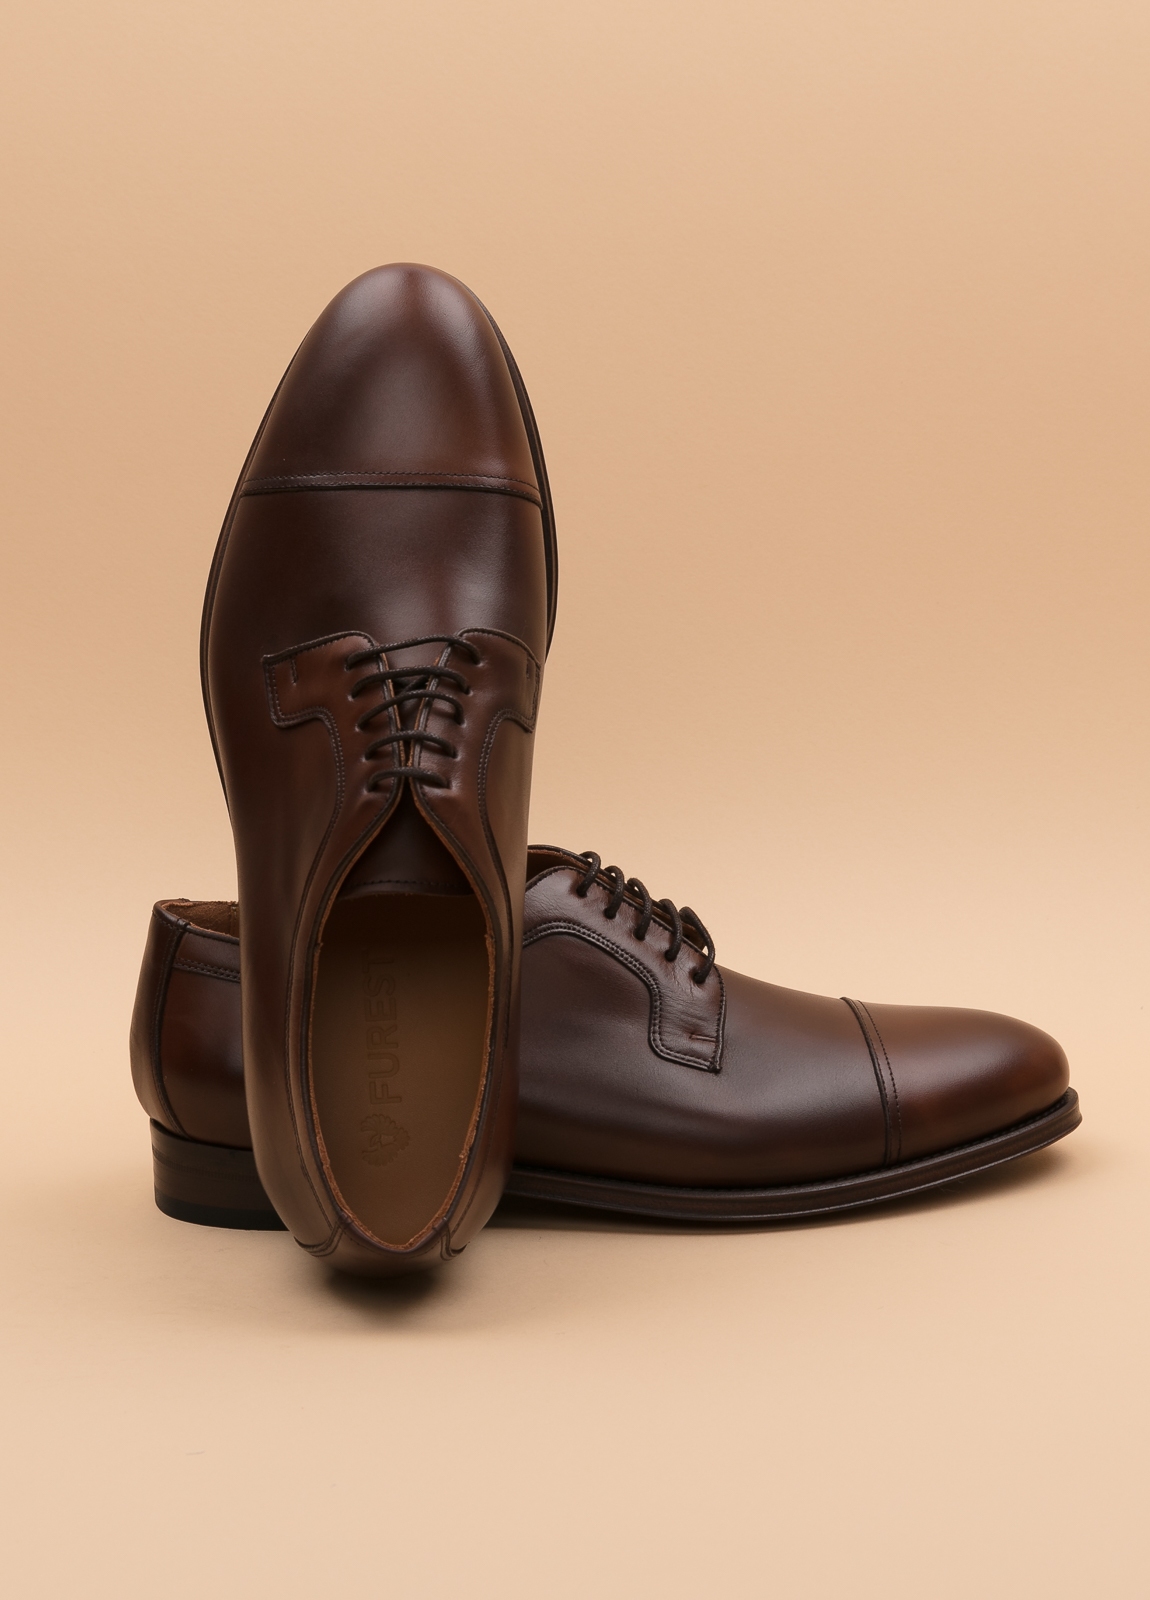 Zapato Formal Wear FUREST COLECCIÓN marrón - Ítem2